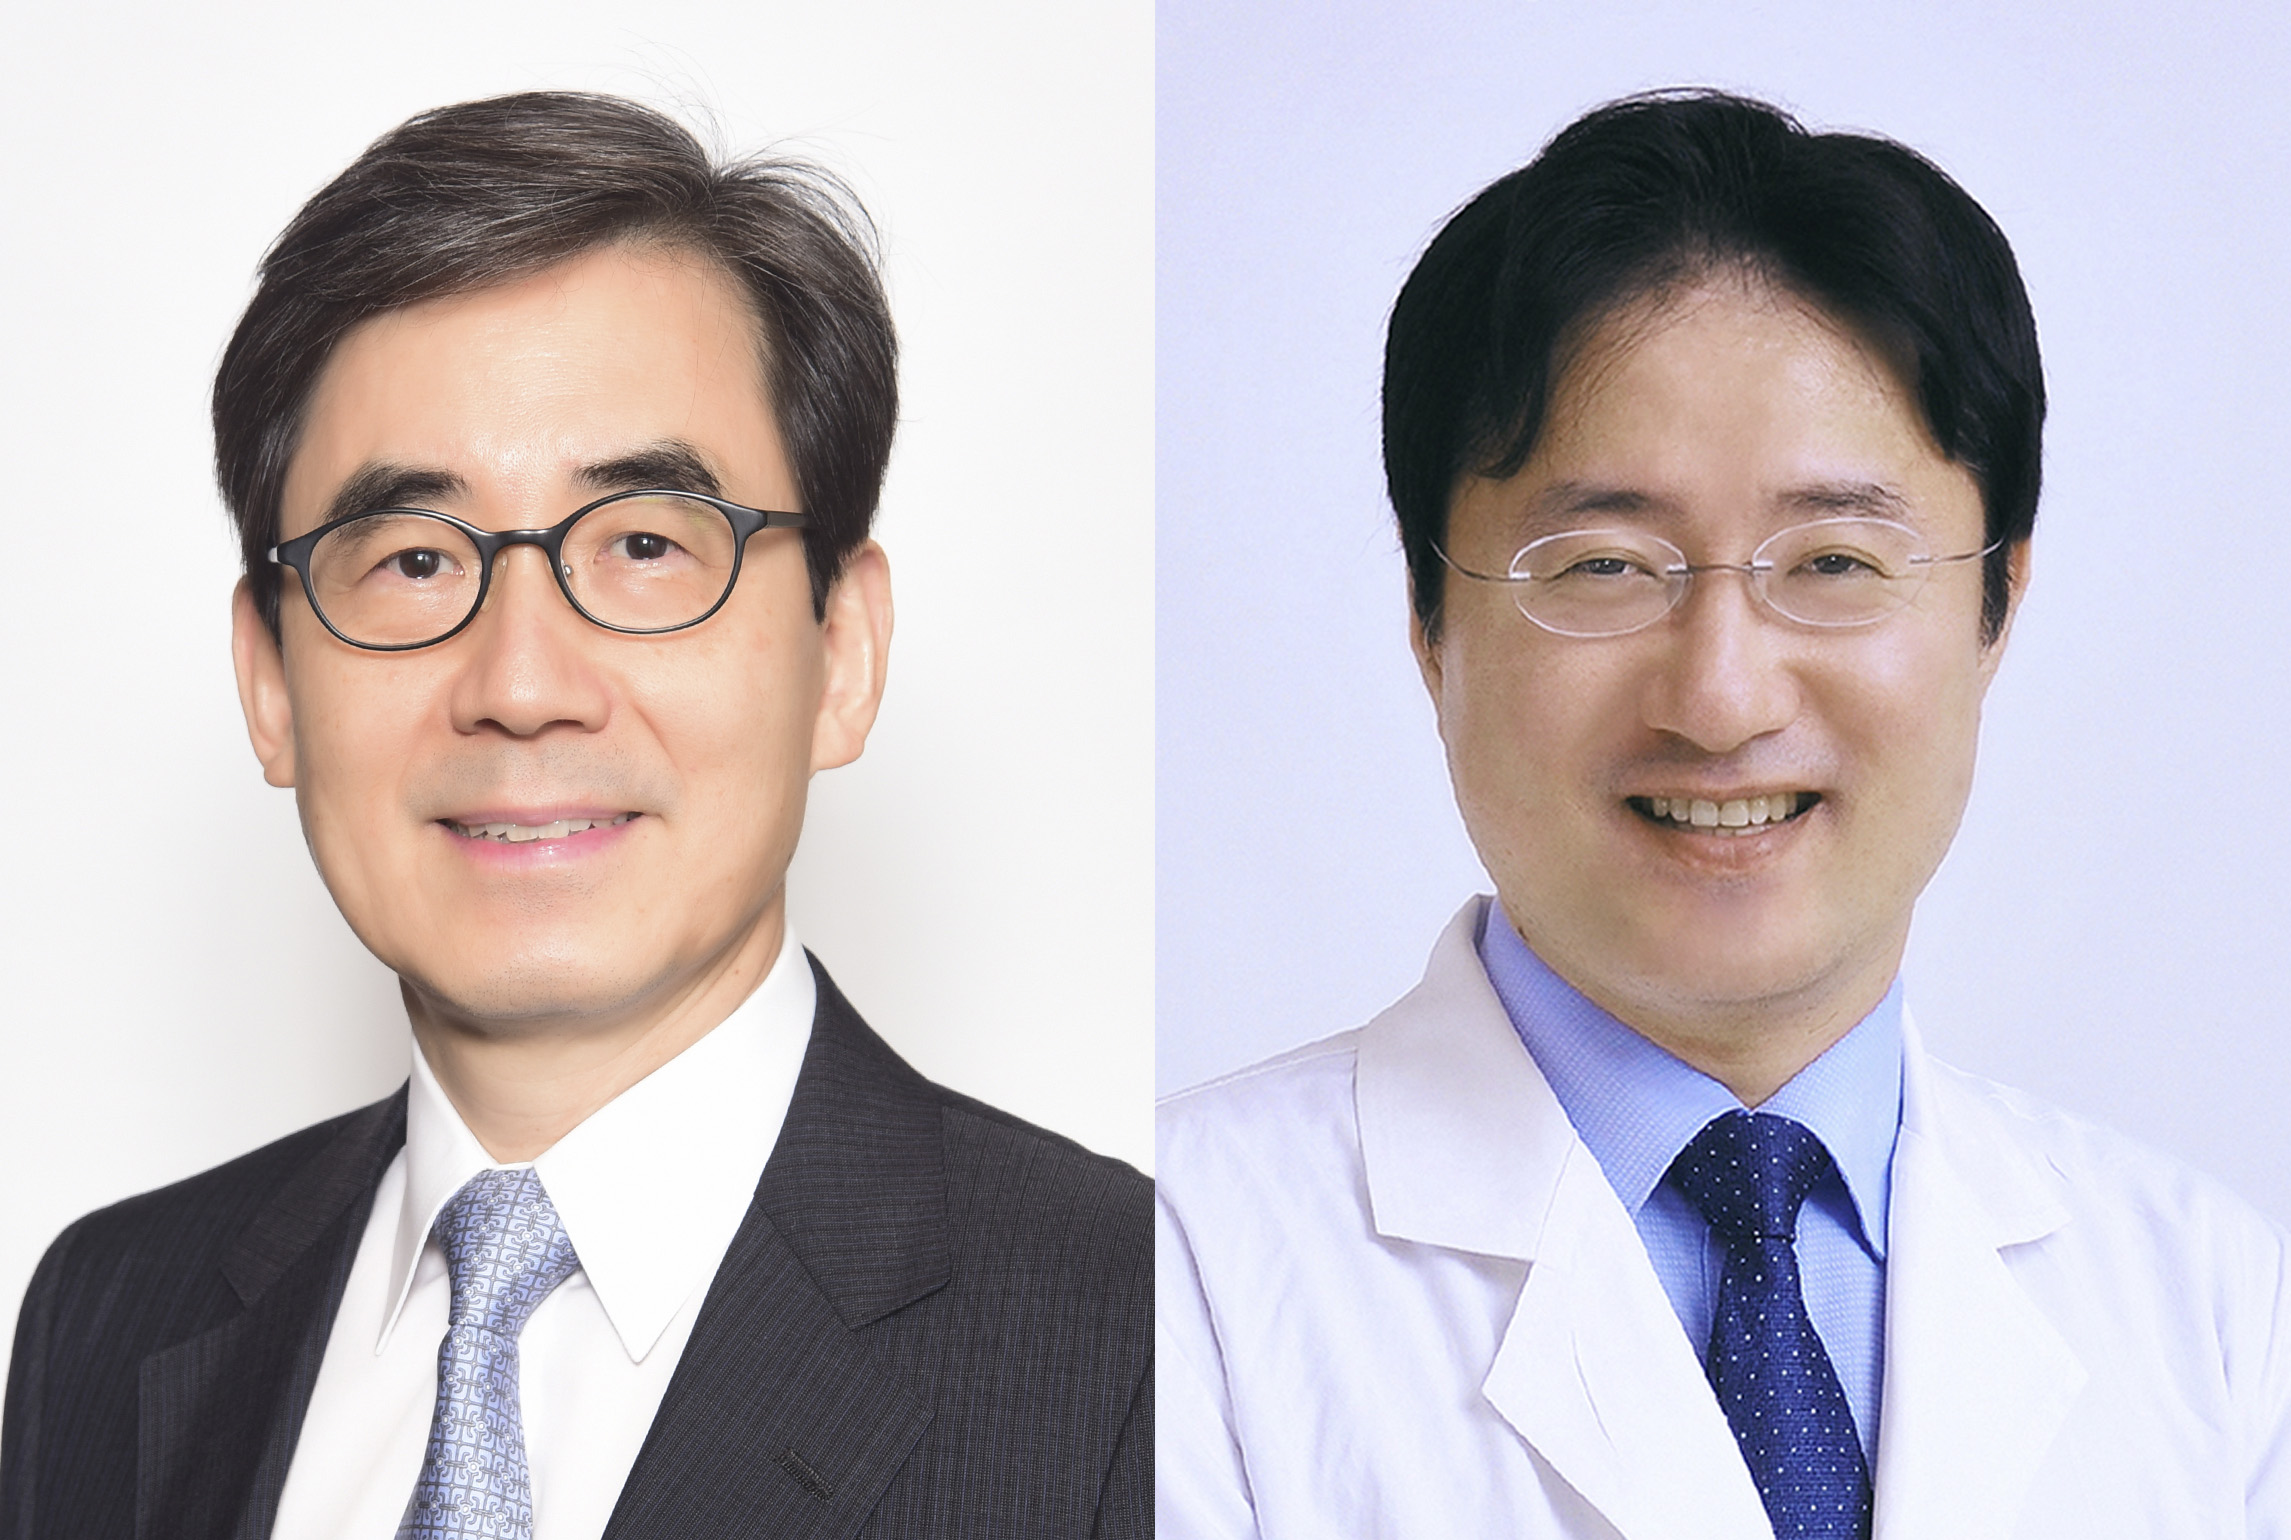 서울대병원 순환기내과 김효수, 양한모 교수